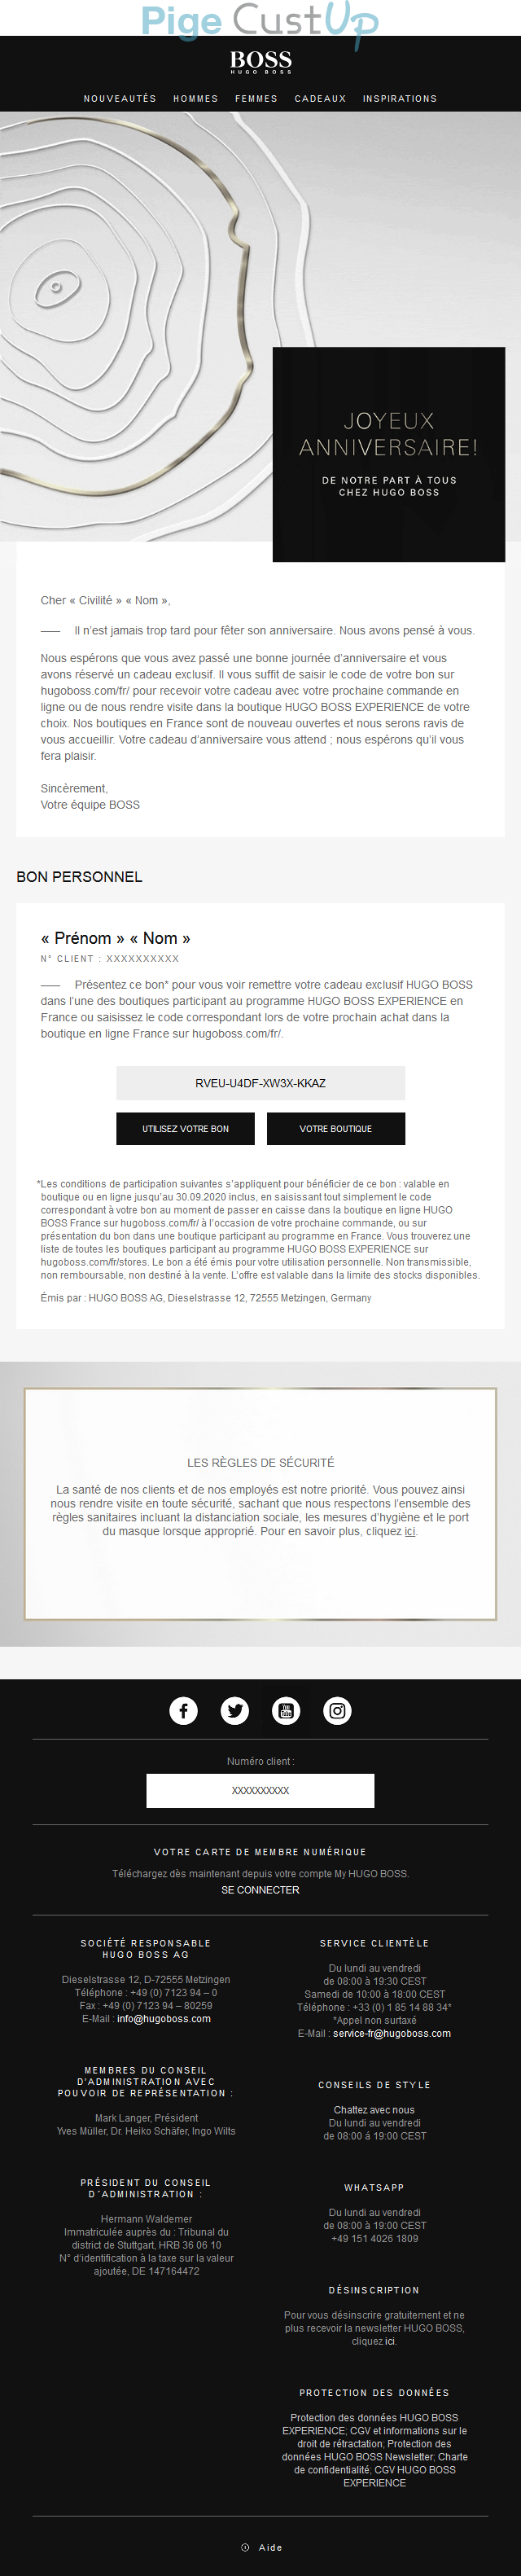 Exemple de Type de media  e-mailing - Hugo Boss - Marketing relationnel - Anniversaire / Fête contact